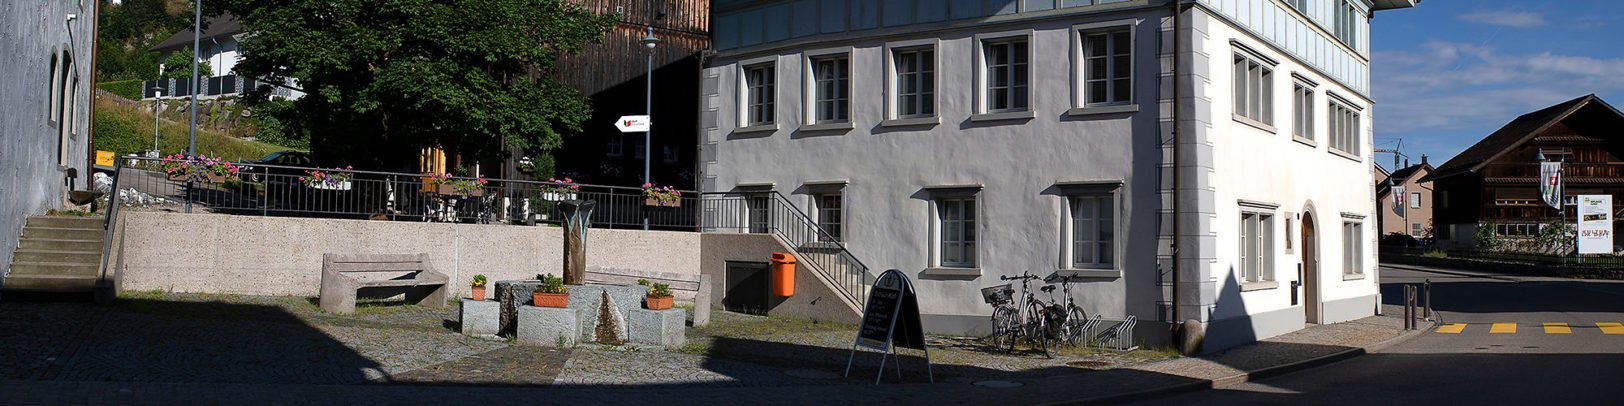 Bildausschnitt Kirchgemeindezentrum Brunnadern